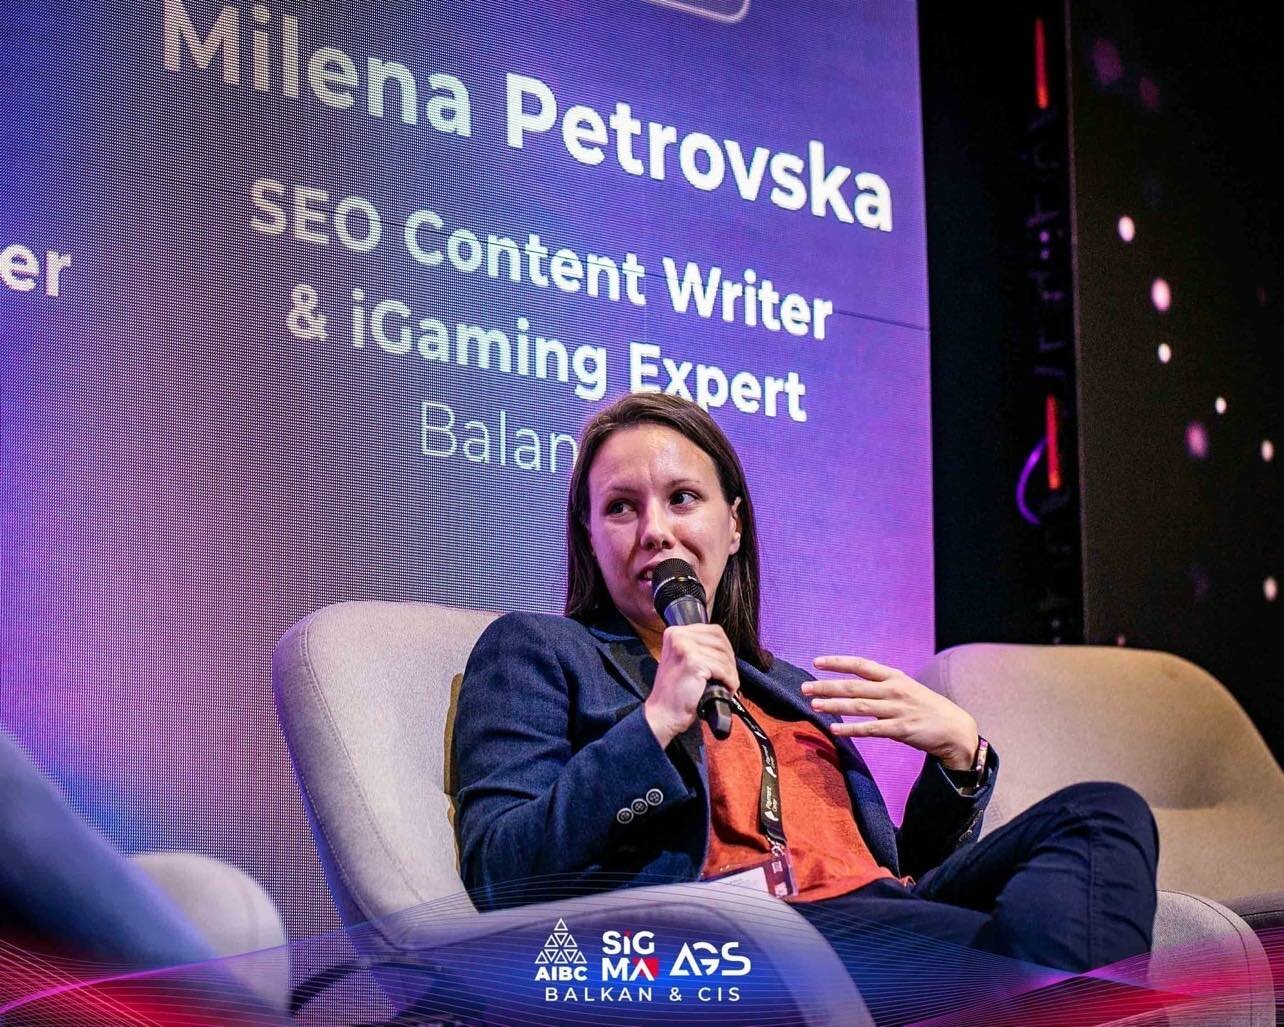 Milena Petrovska at Sigma Conference